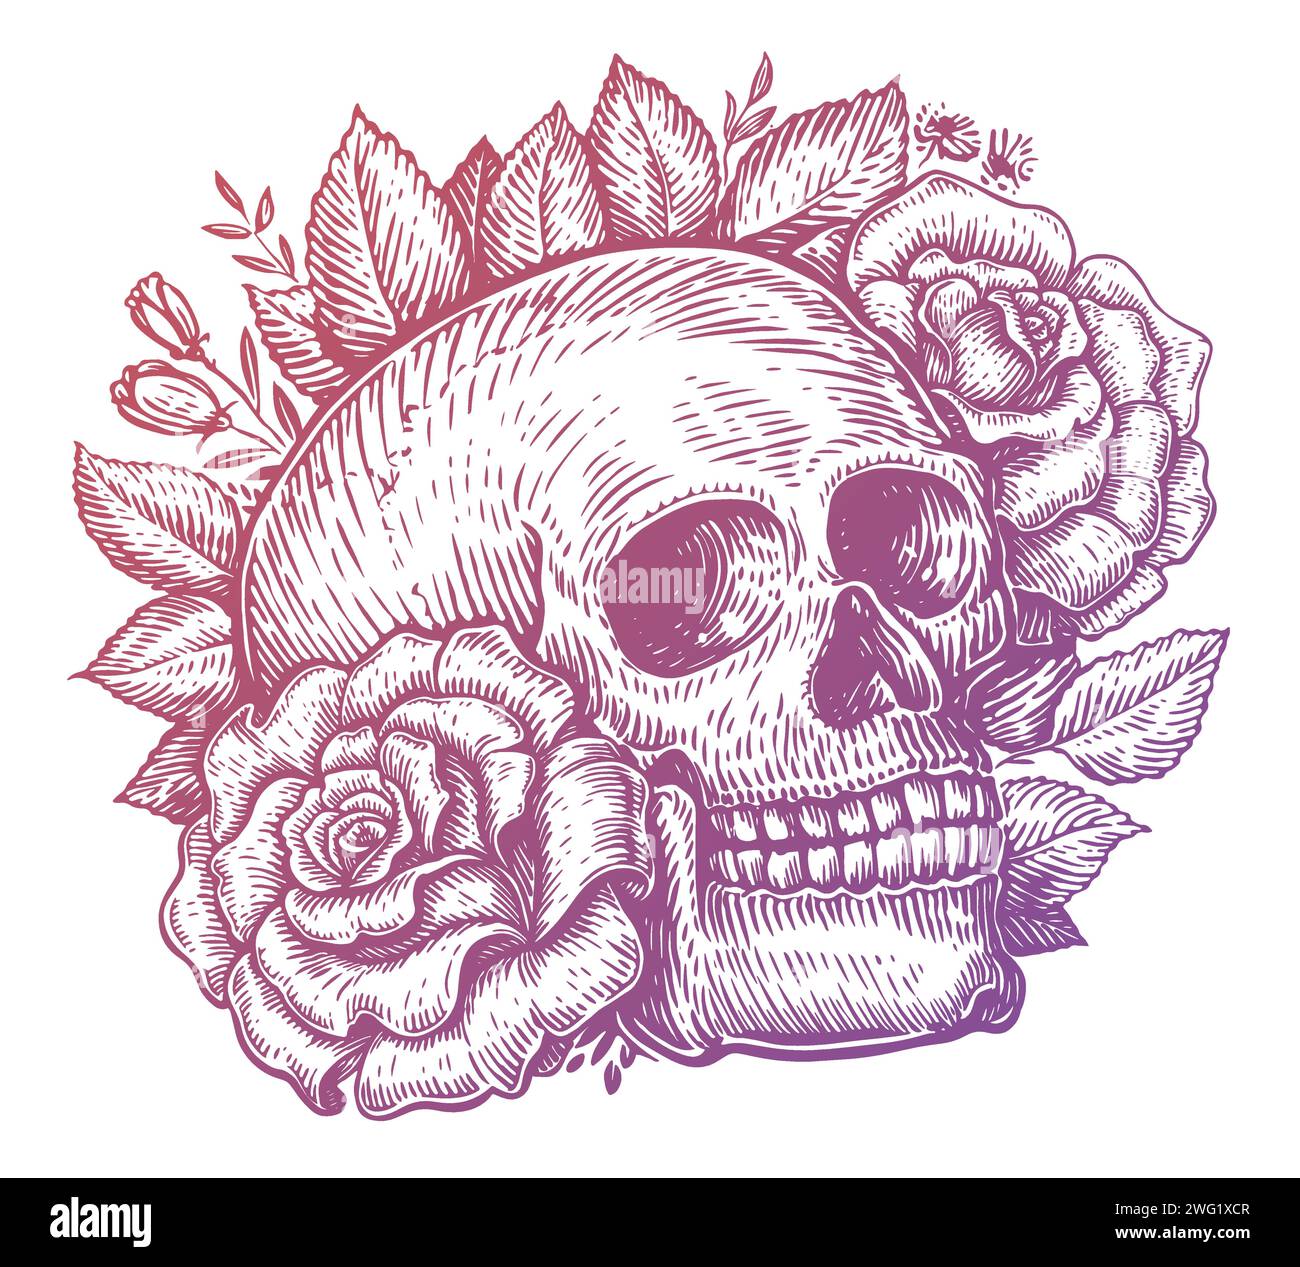 Crâne humain et roses avec des feuilles et des plantes. Illustration vectorielle vintage dessinée à la main Illustration de Vecteur